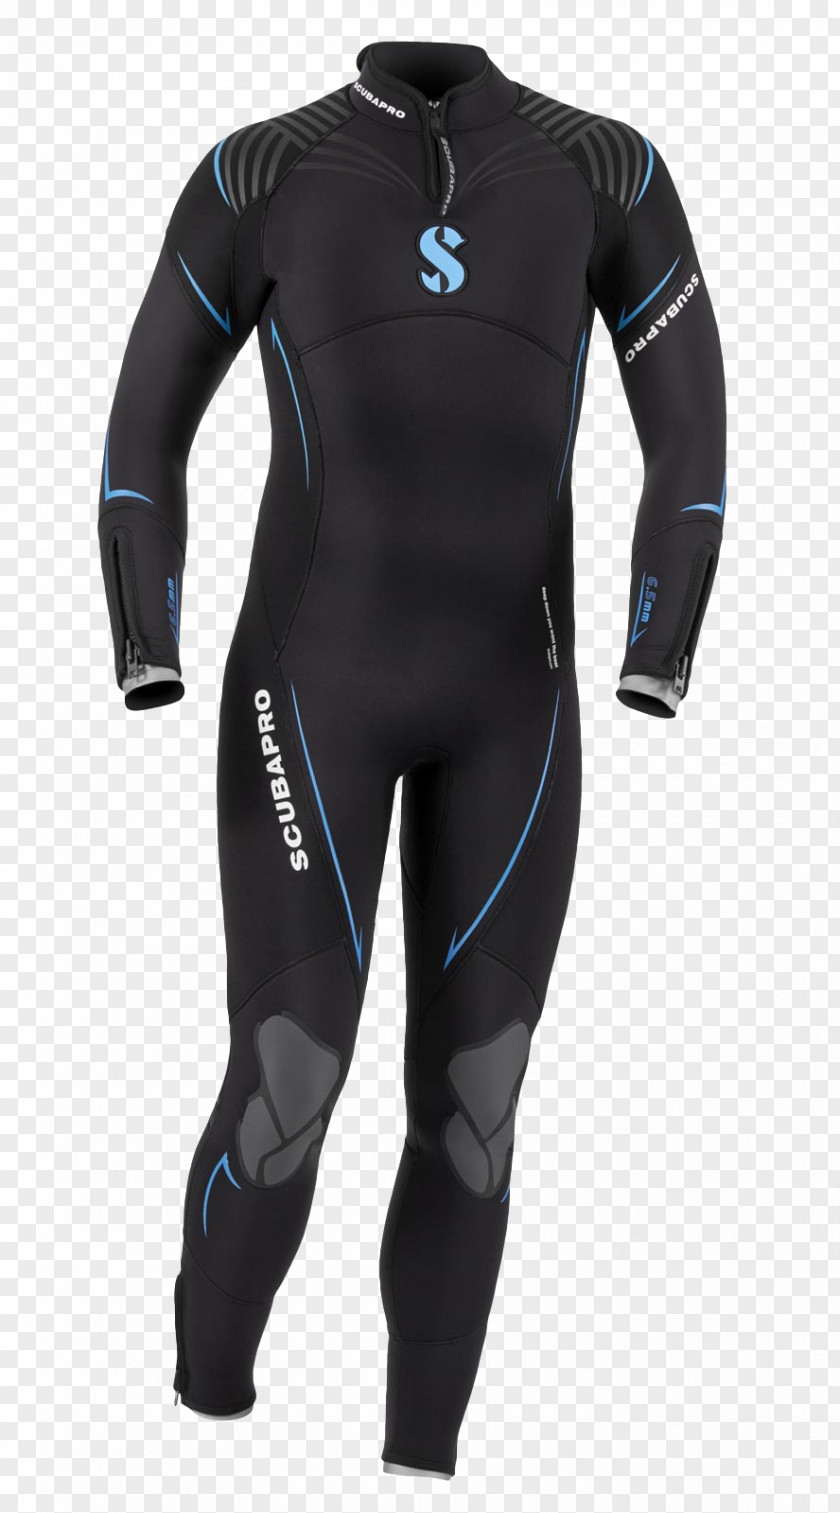 Cressisub Scubapro Underwater Diving Wetsuit Scuba Set Dry Suit PNG